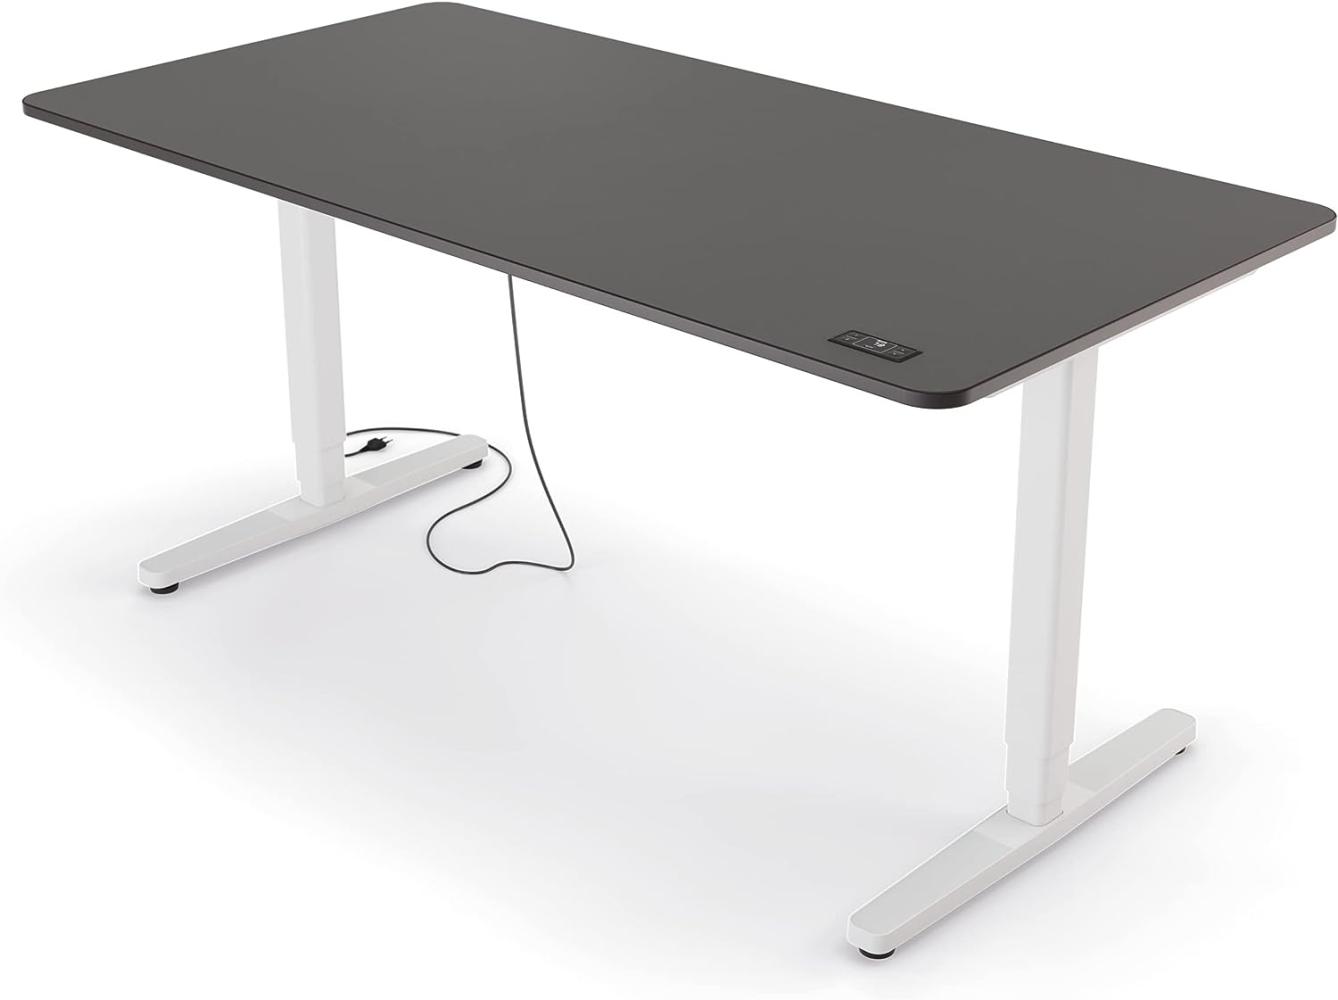 Yaasa Desk Pro II Elektrisch Höhenverstellbarer Schreibtisch, 160 x 80 cm, Dunkelgrau/Schwarz-Weiß, mit Speicherfunktion und Kollisionssensor Bild 1